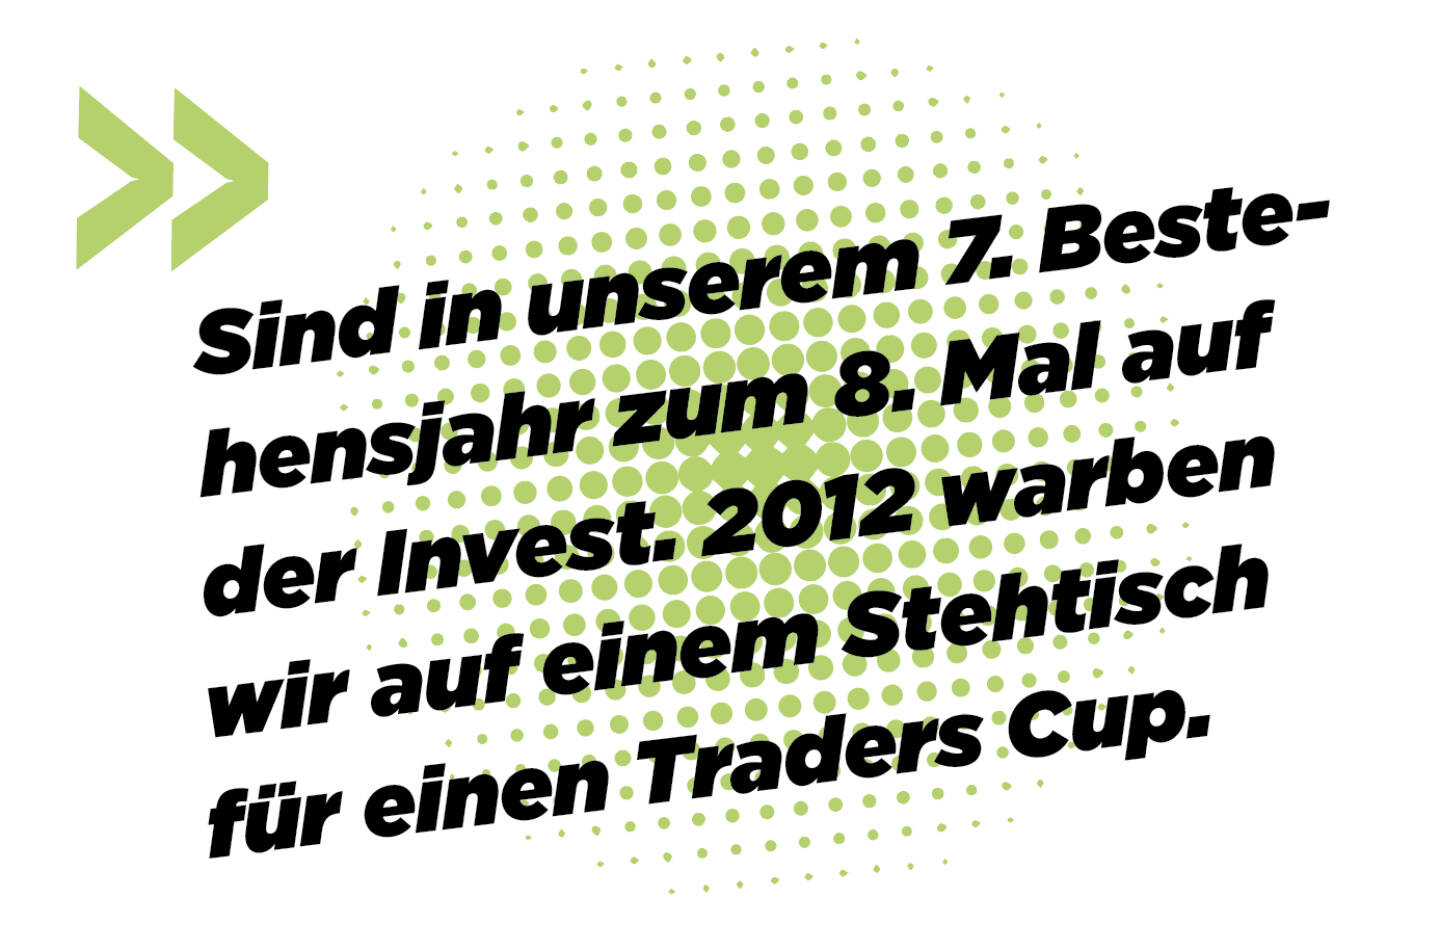 Sind in unserem 7. Bestehensjahr zum 8. Mal auf der Invest. 2012 warben wir auf einem Stehtisch für einen Traders Cup. 
Andreas Kern